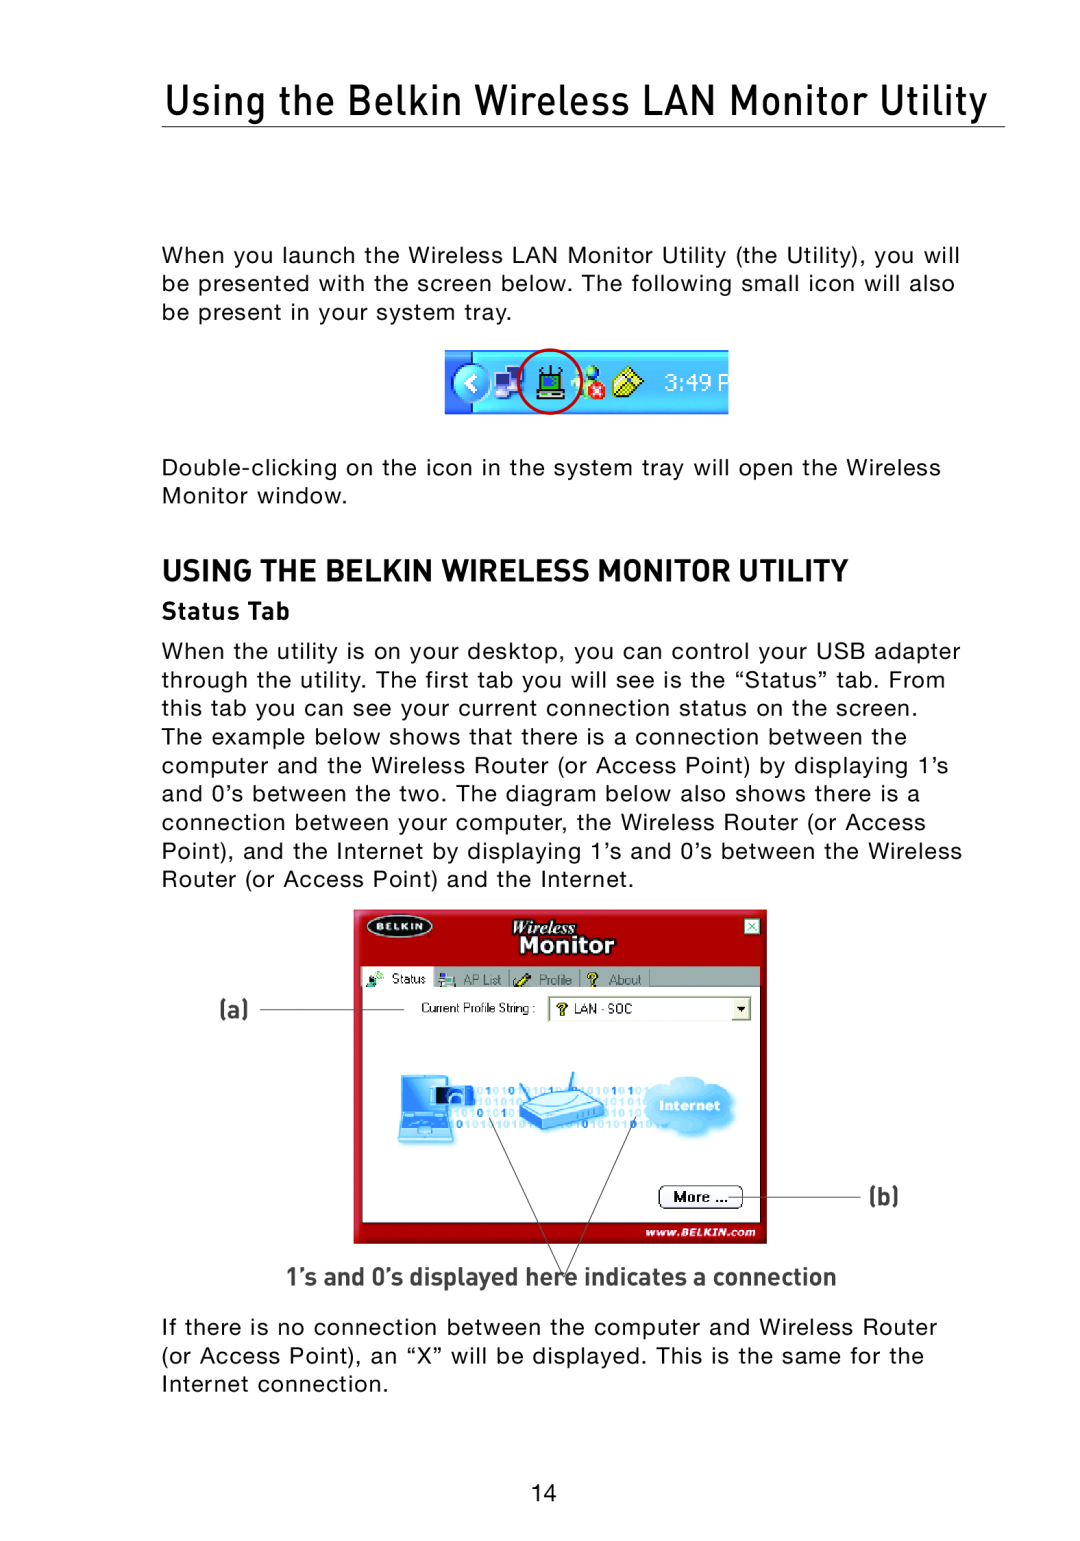 Belkin F5D7051 manual Using the Belkin Wireless LAN Monitor Utility, Using The Belkin Wireless Monitor Utility, Status Tab 